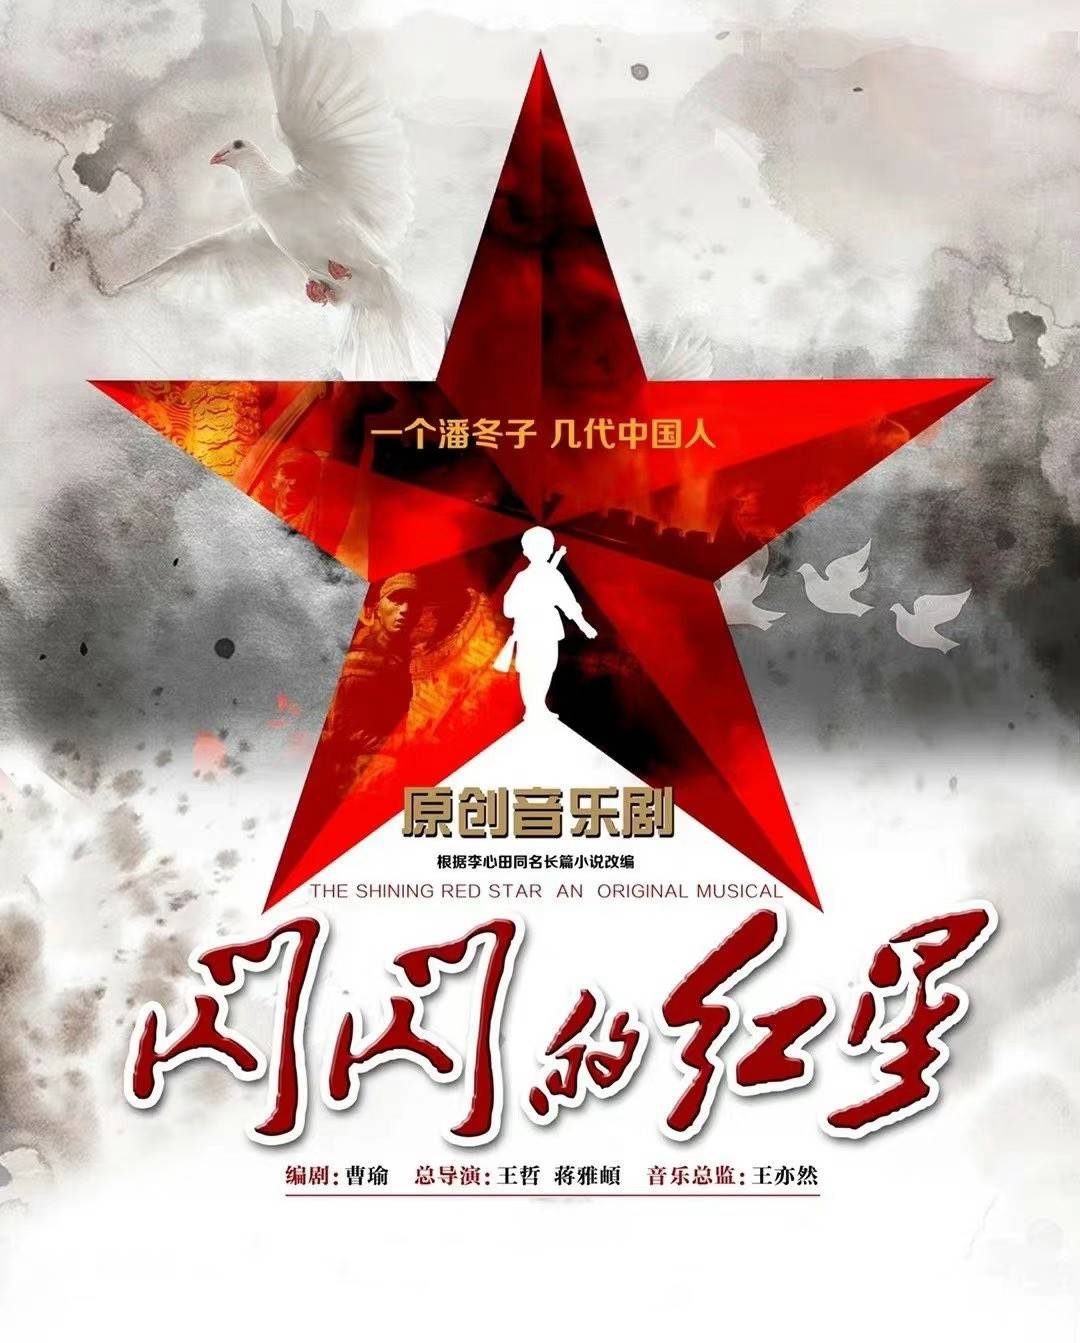 北京世纪剧院再响经典旋律，原创音乐剧《闪闪的红星》载誉复排